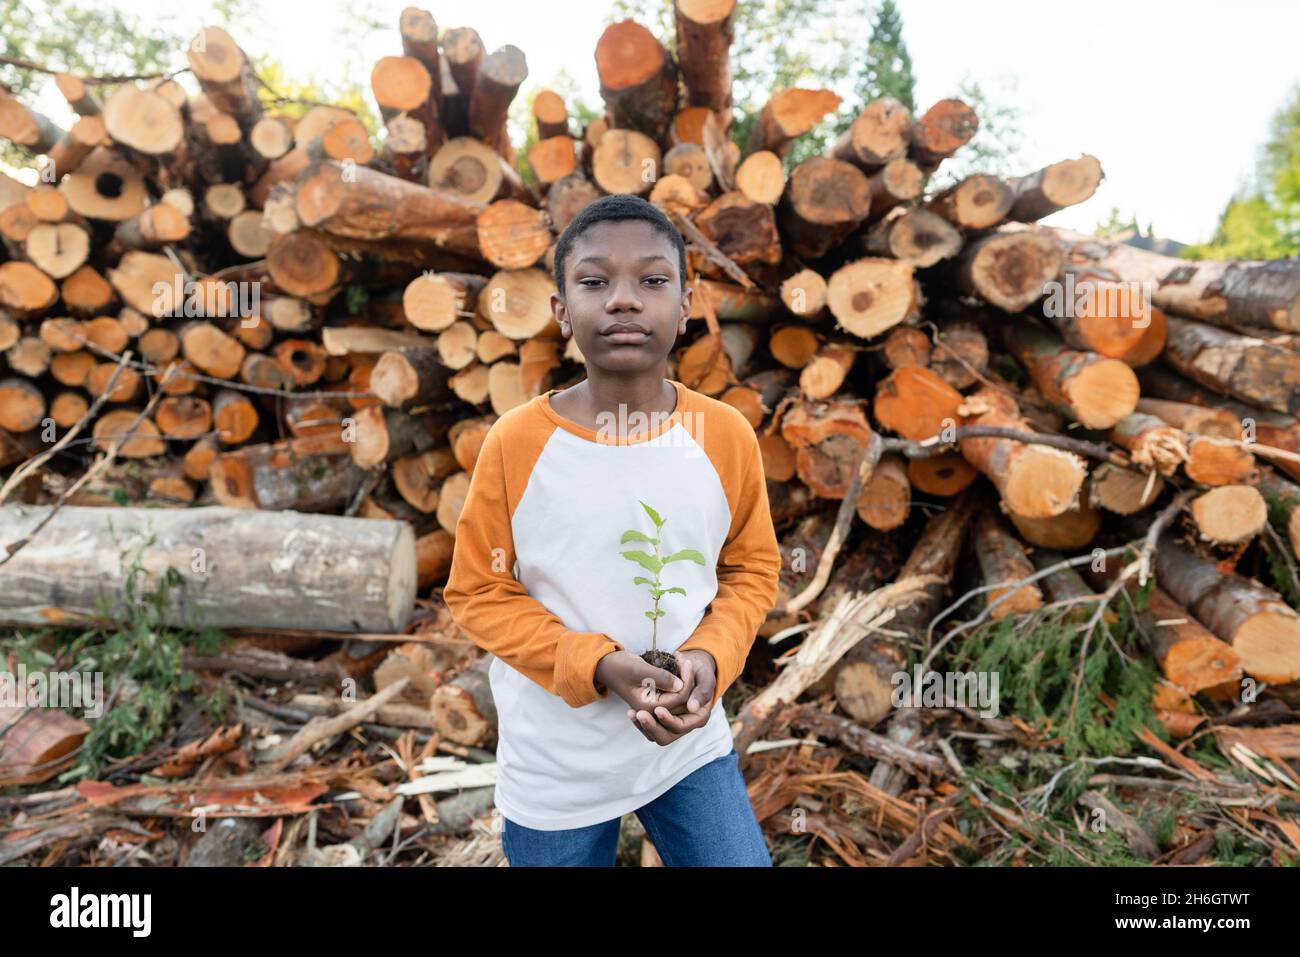 Der junge schwarze Junge steht vor einem Haufen von Baumstämmen und hält einen kleinen Baumkater. Stockfoto